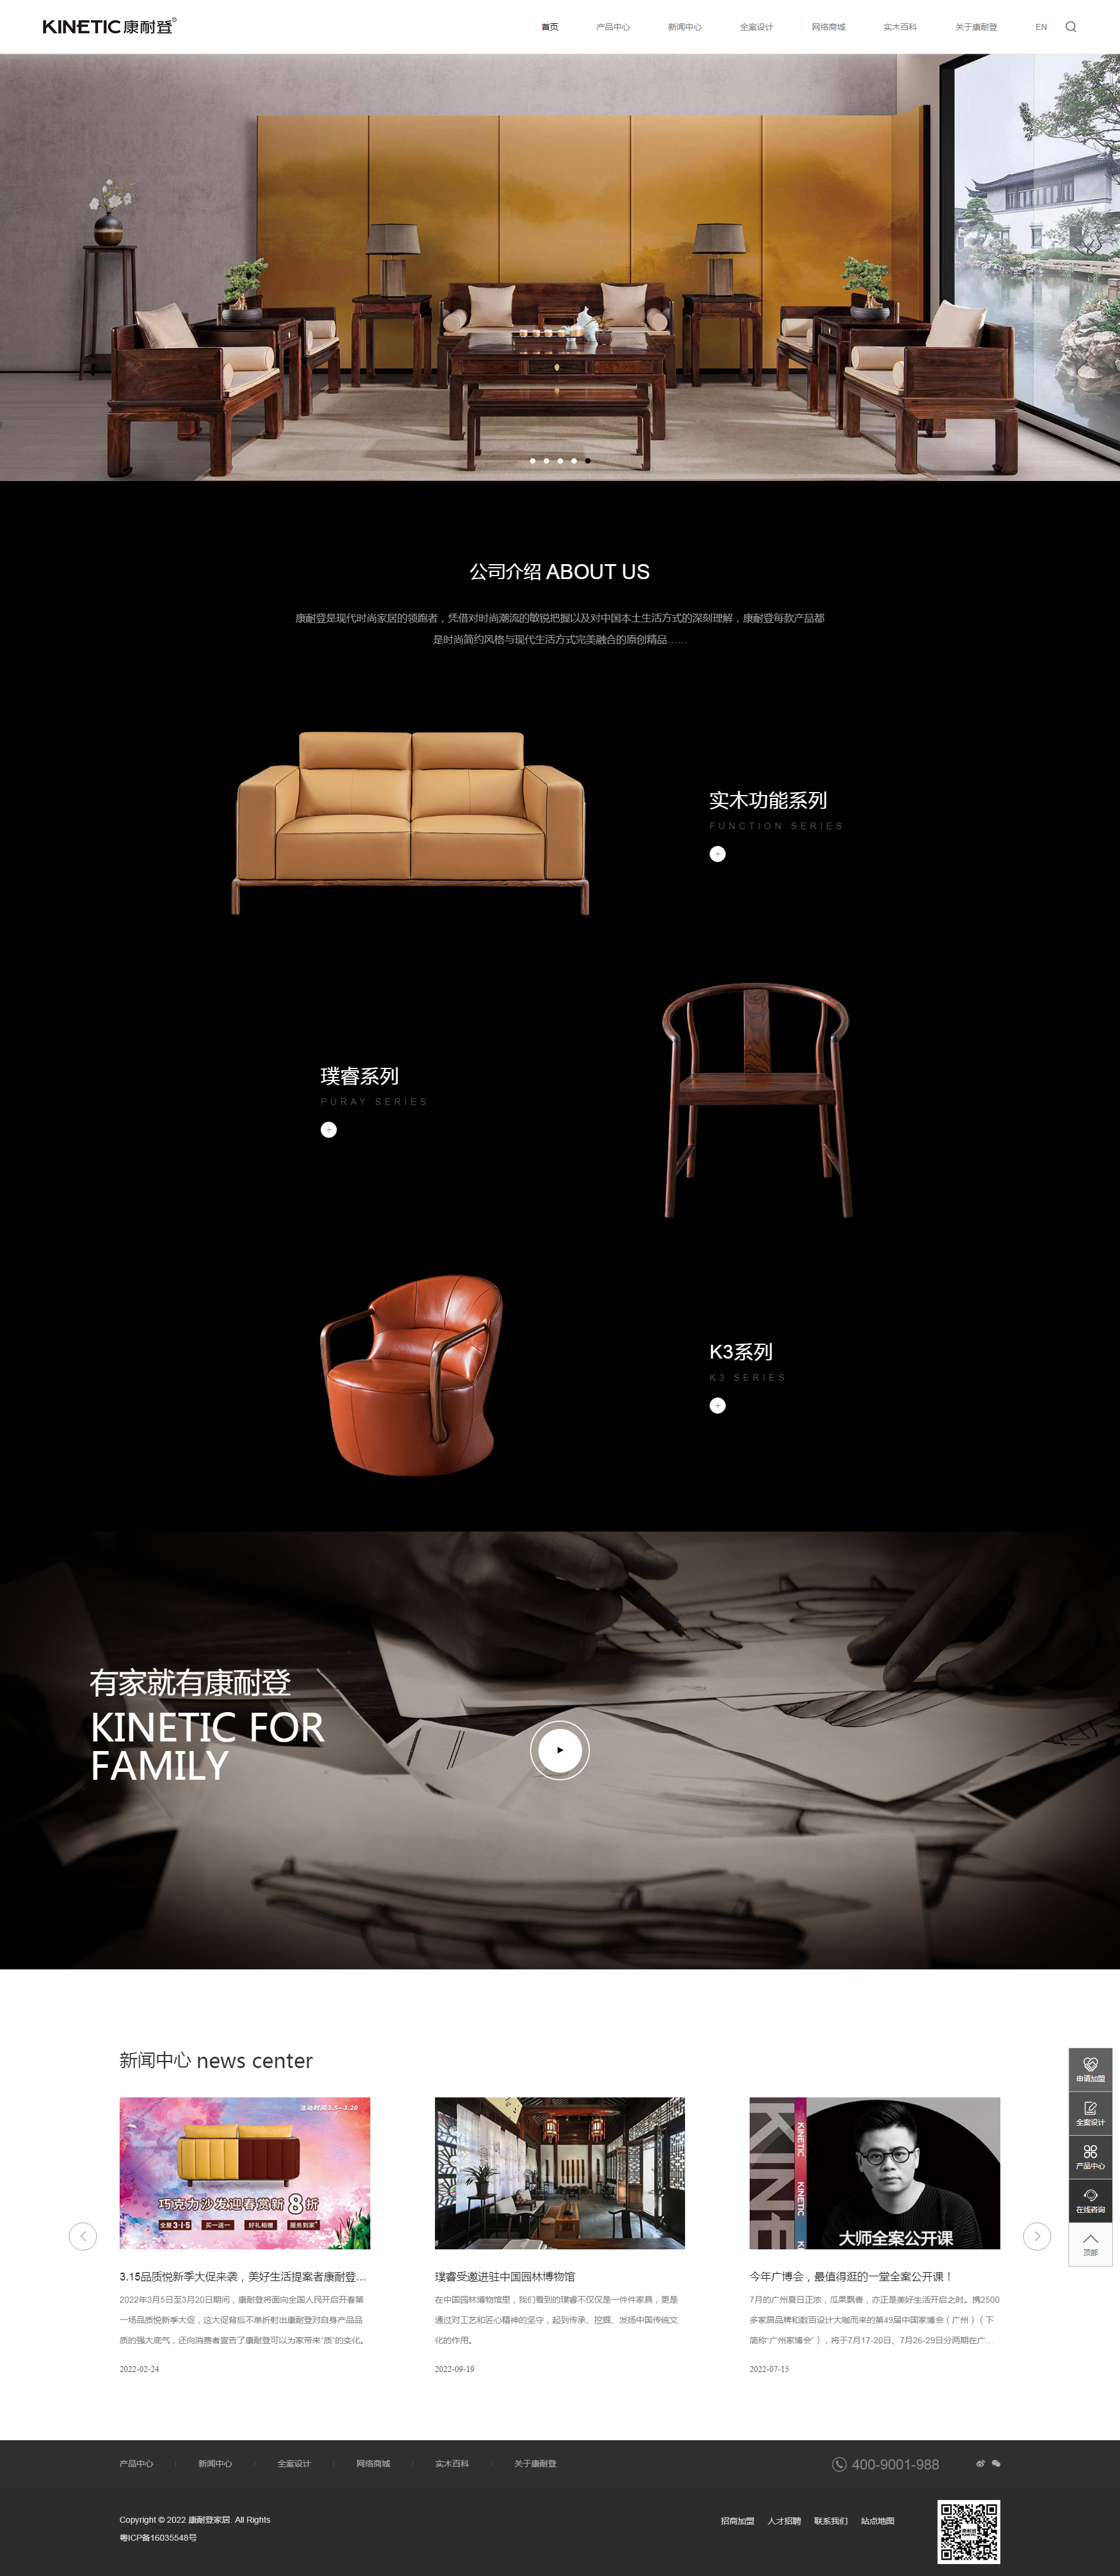 广州康耐登家居用品网站制作首页设计效果图